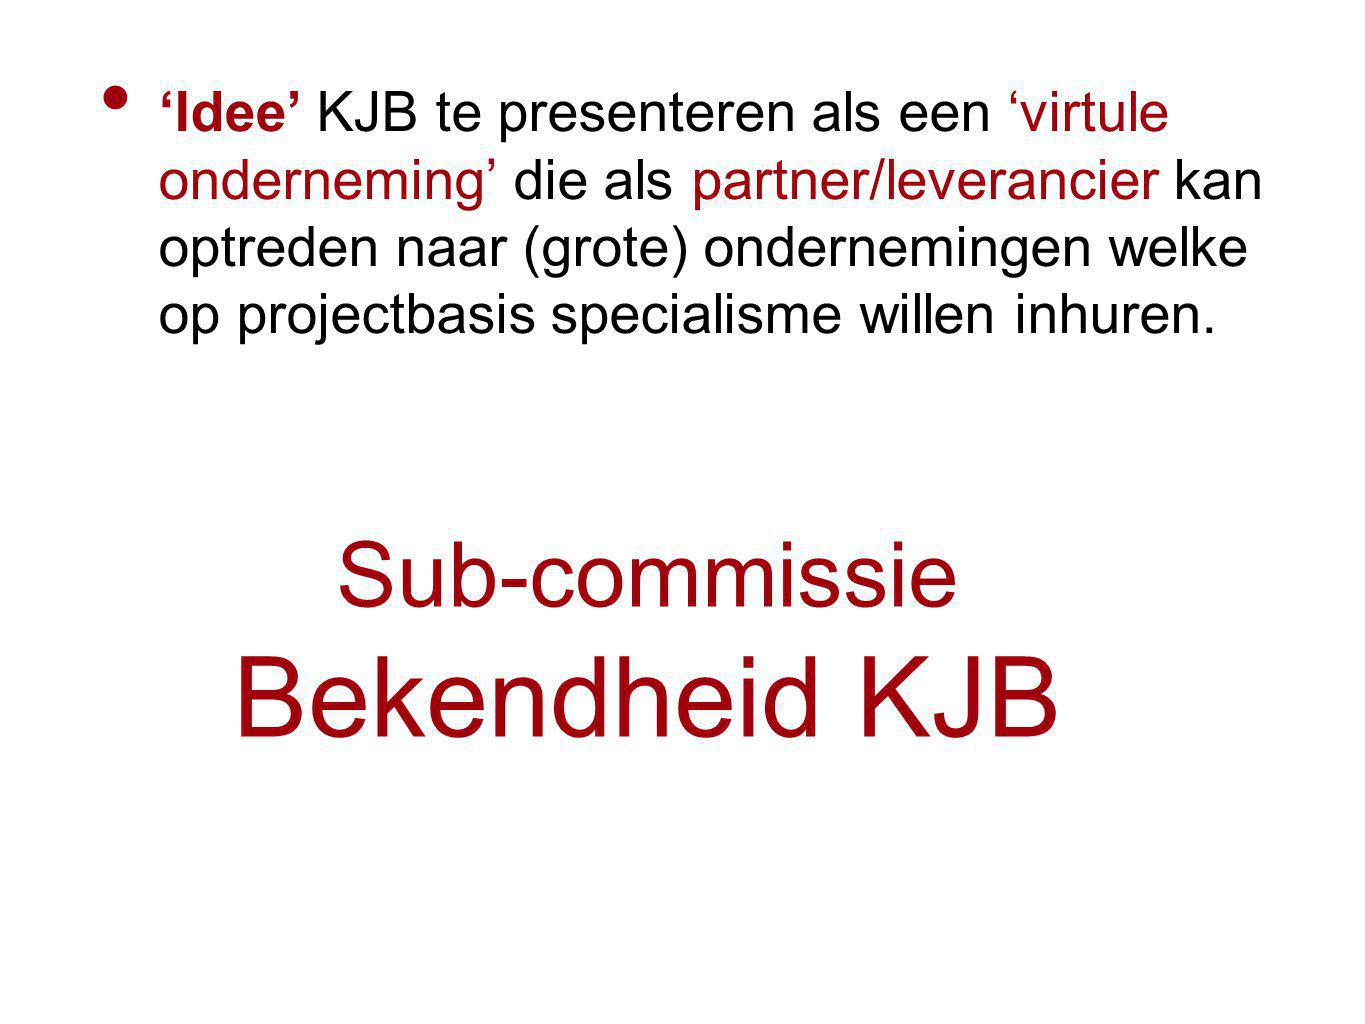 Sub-commissie Bekendheid KJB ‘Idee’ KJB te presenteren als een ‘virtule onderneming’ die als partner/leverancier kan optreden naar (grote) ondernemingen welke op projectbasis specialisme willen inhuren.